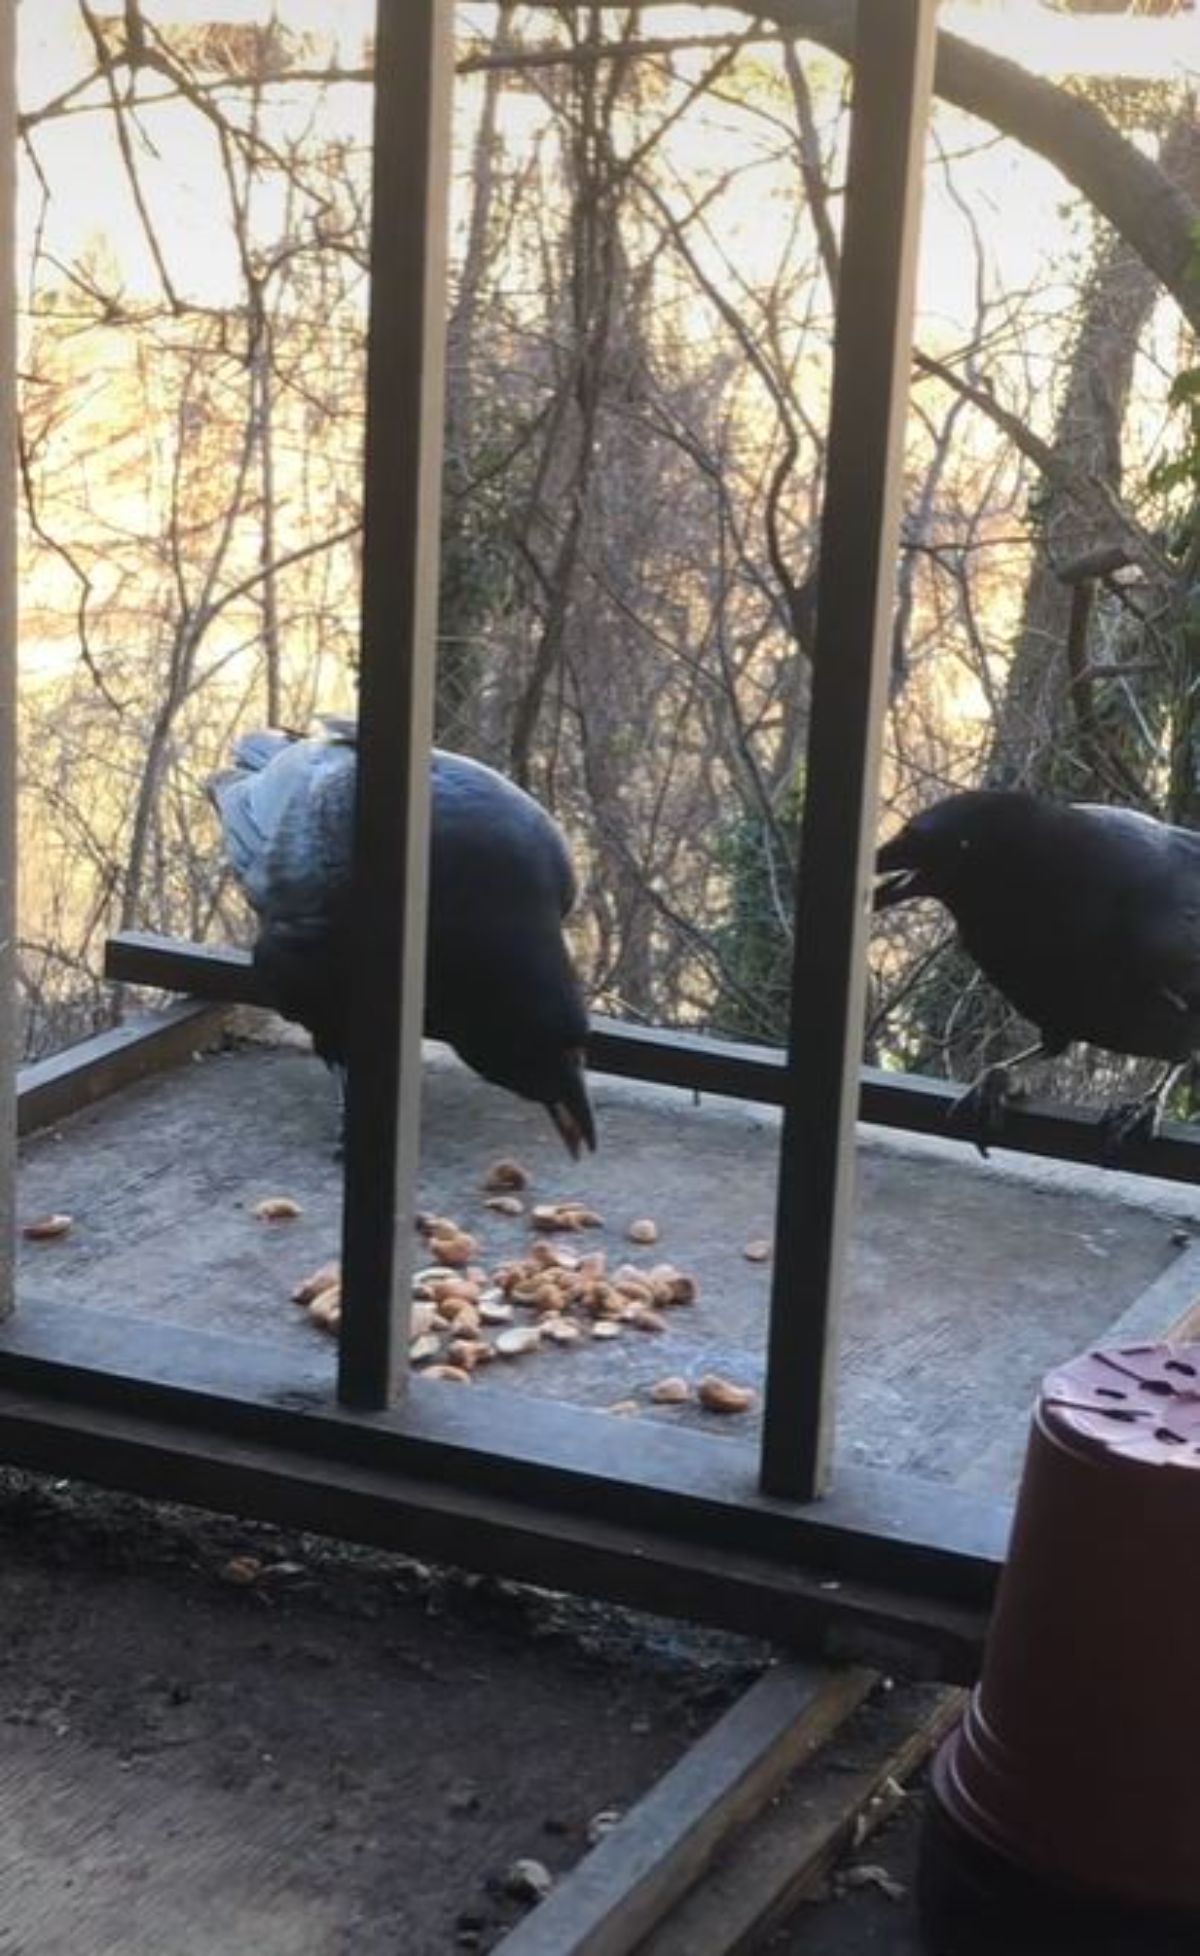 2 crows eating cashews